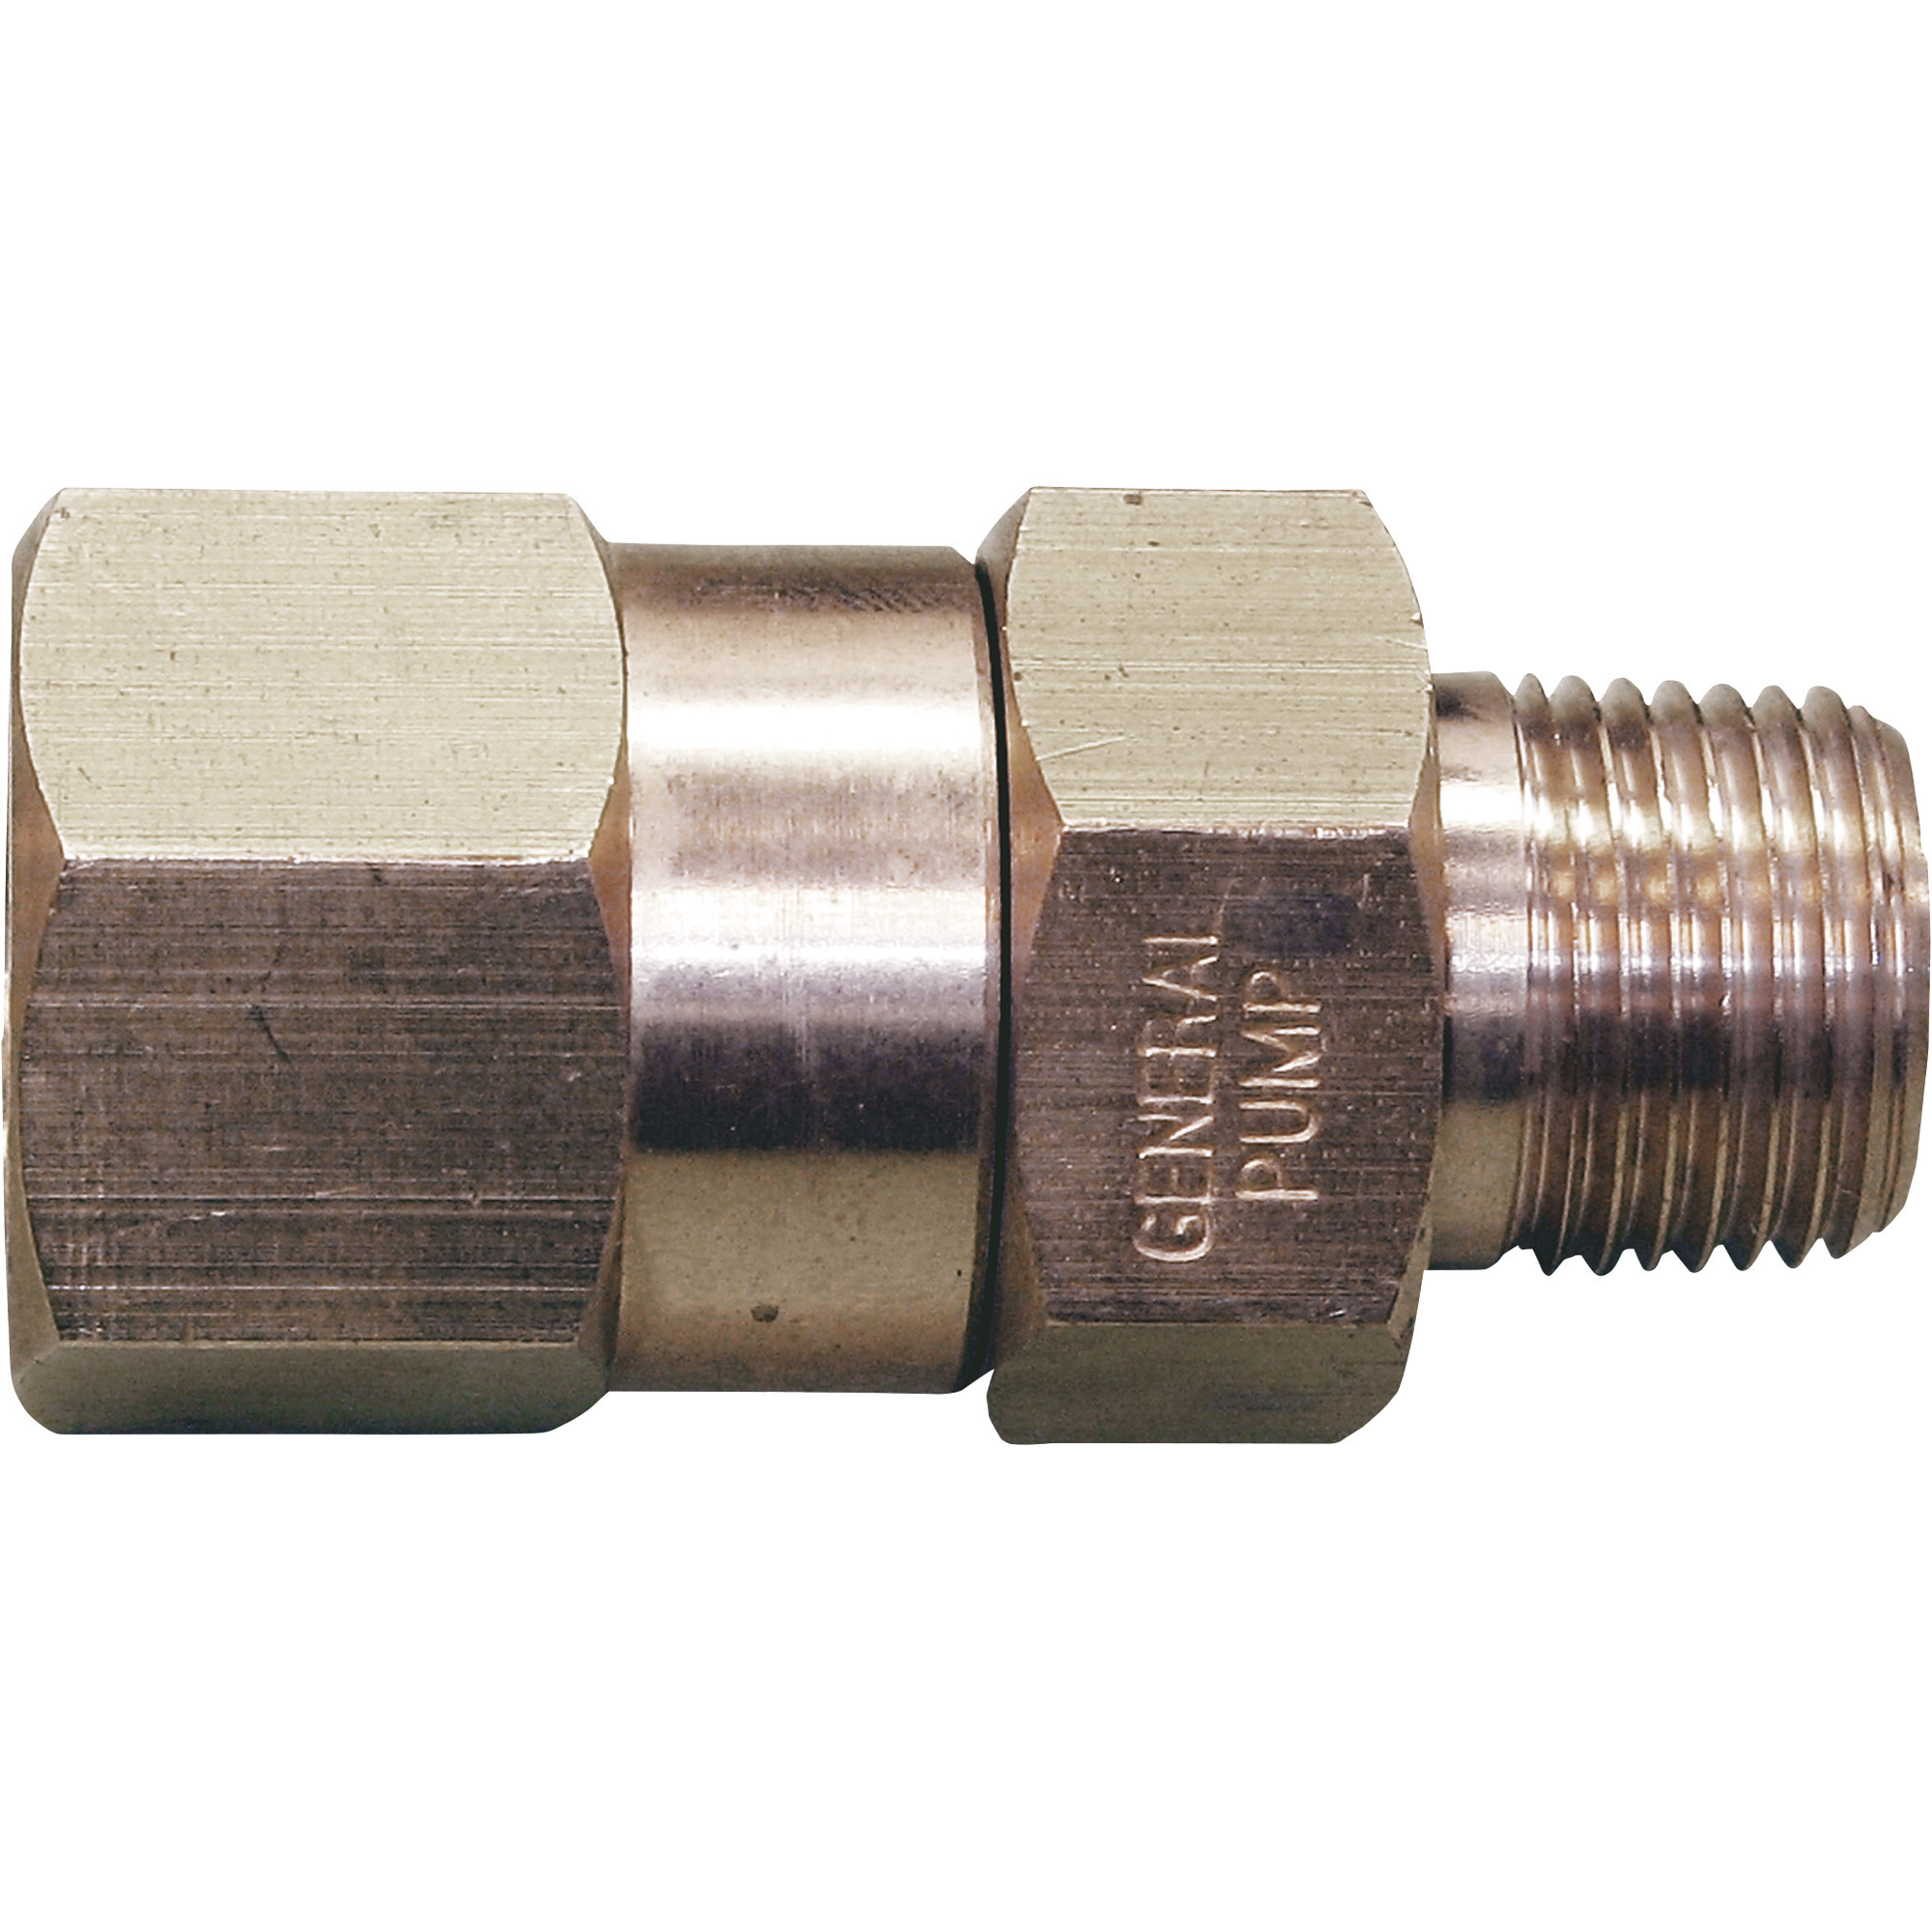 General Pump Pressure Washer Swivel â 4000 PSI, 3/8Inch, Brass, Model ND10066P